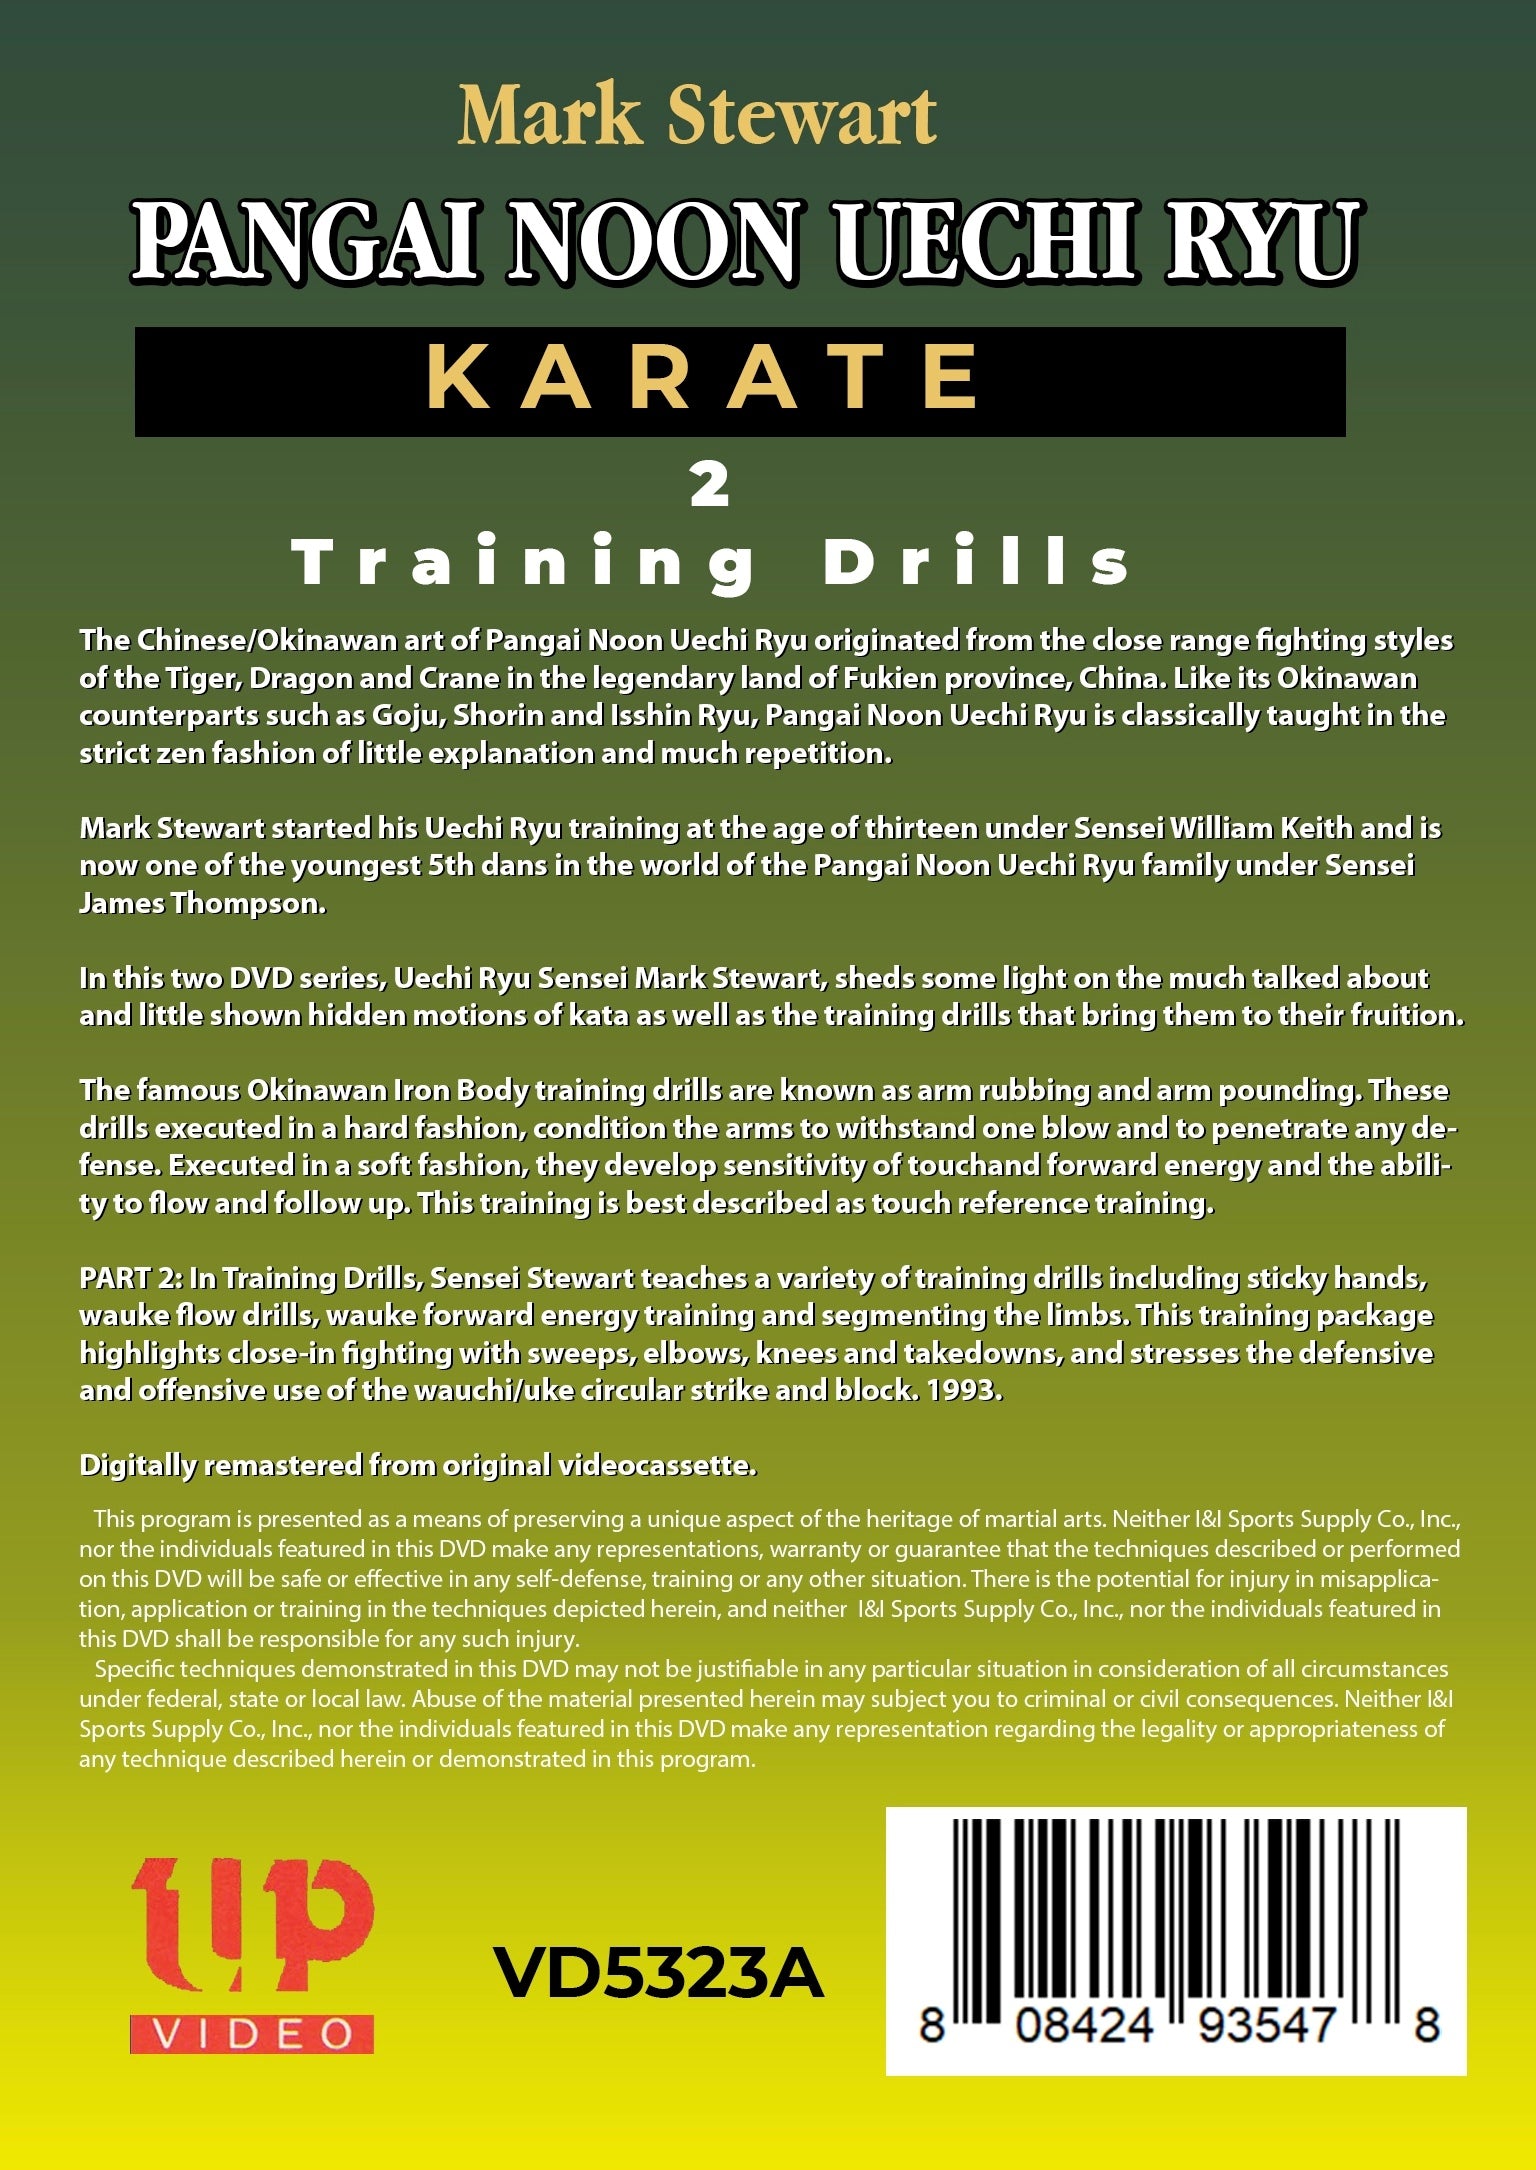 2 DVD Set Chinese Okinawan Pangai Noon Uechi Karate Kata Secrets Mark Stewart